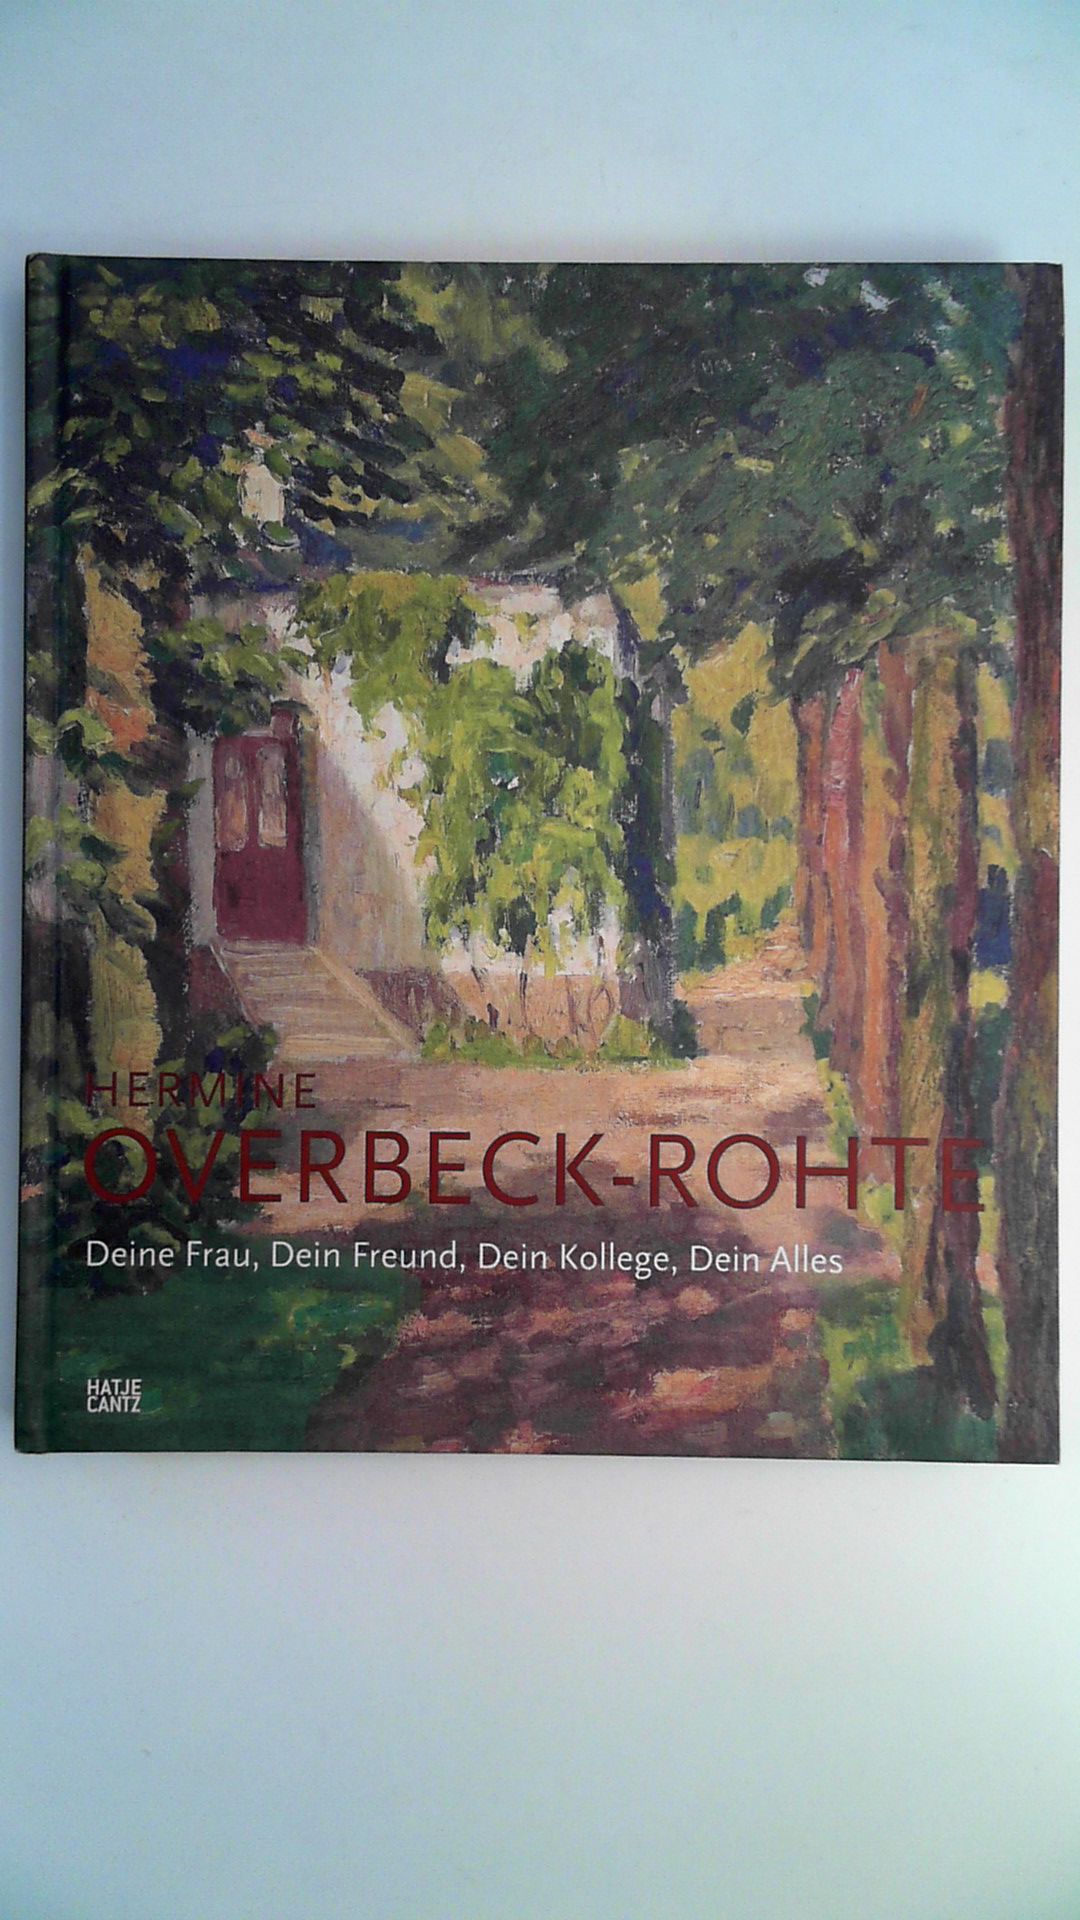 Hermine Overbeck-Rohte - Deine Frau, Dein Freund, Dein Kollege, Dein Alles, - Overbeck-Museum Bremen (Hrsg.)